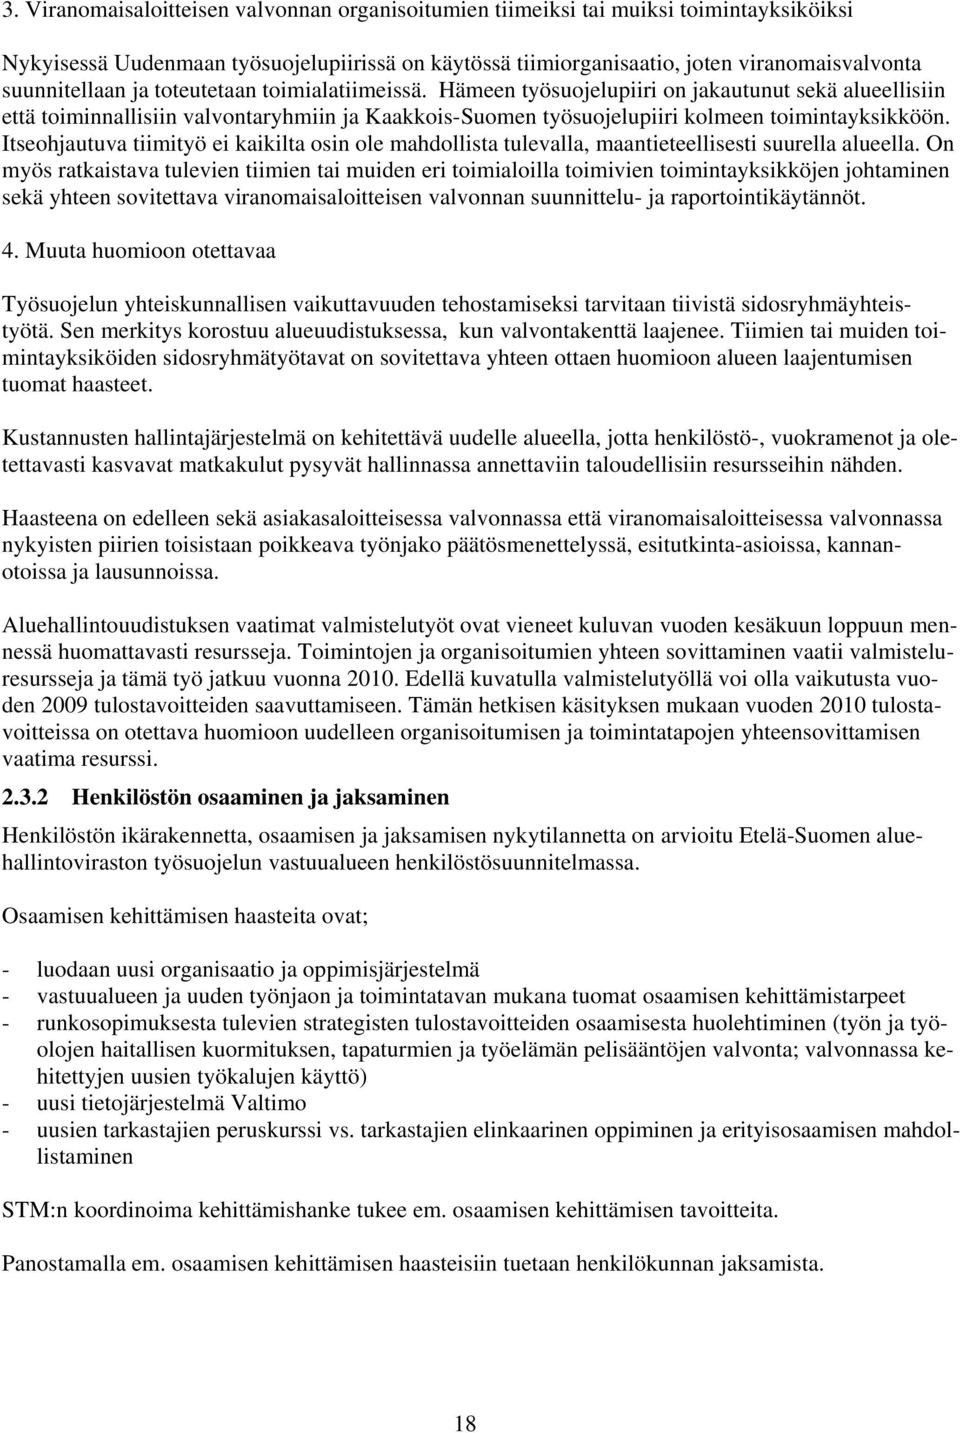 Hämeen työsuojelupiiri on jakautunut sekä alueellisiin että toiminnallisiin valvontaryhmiin ja Kaakkois-Suomen työsuojelupiiri kolmeen toimintayksikköön.